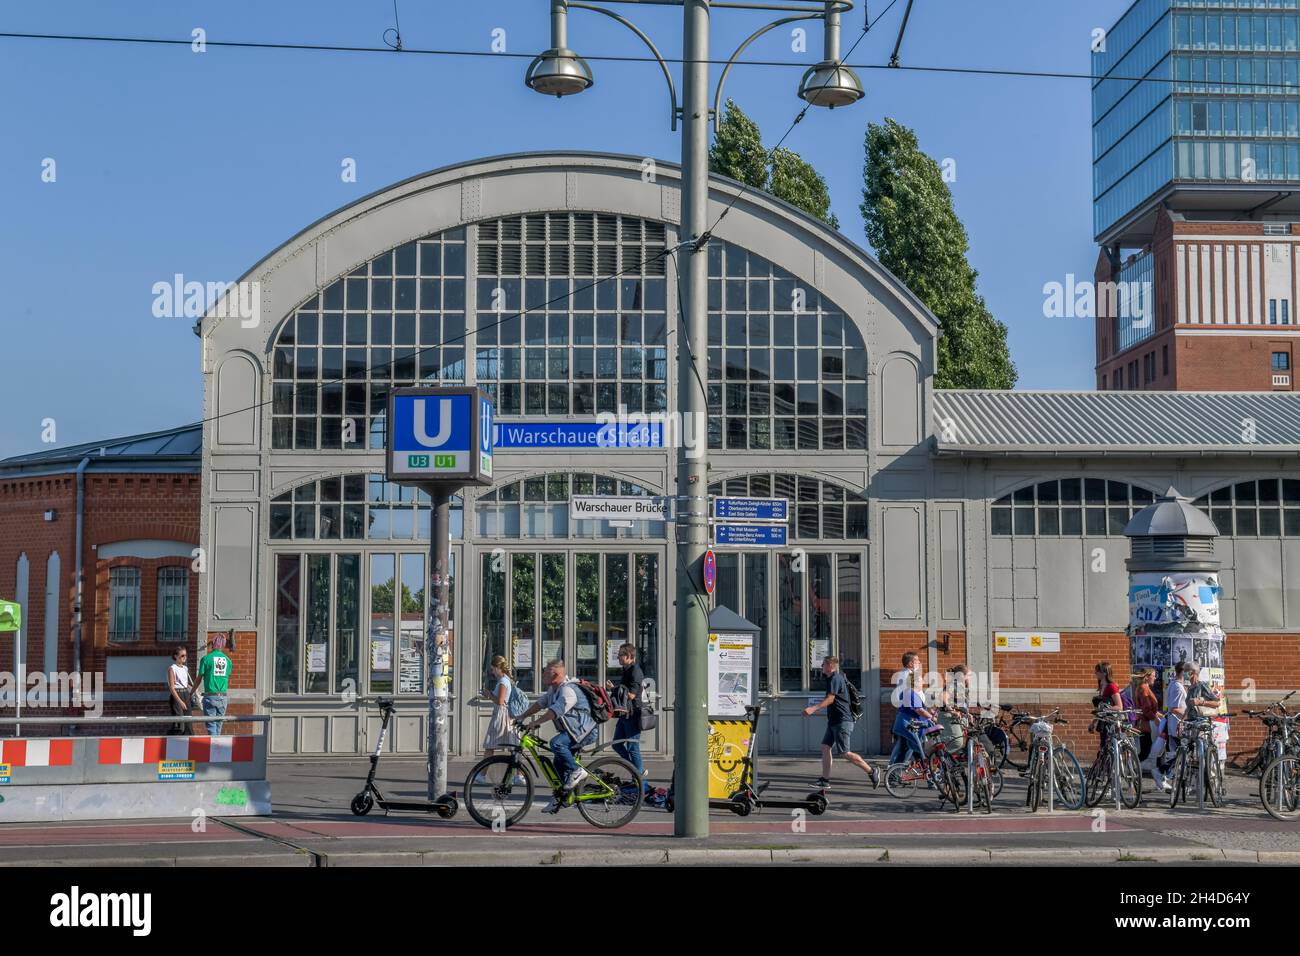 U-Bahnhof Warschauer Straße, Friedrichshain, Berlin, Deutschland Stock Photo